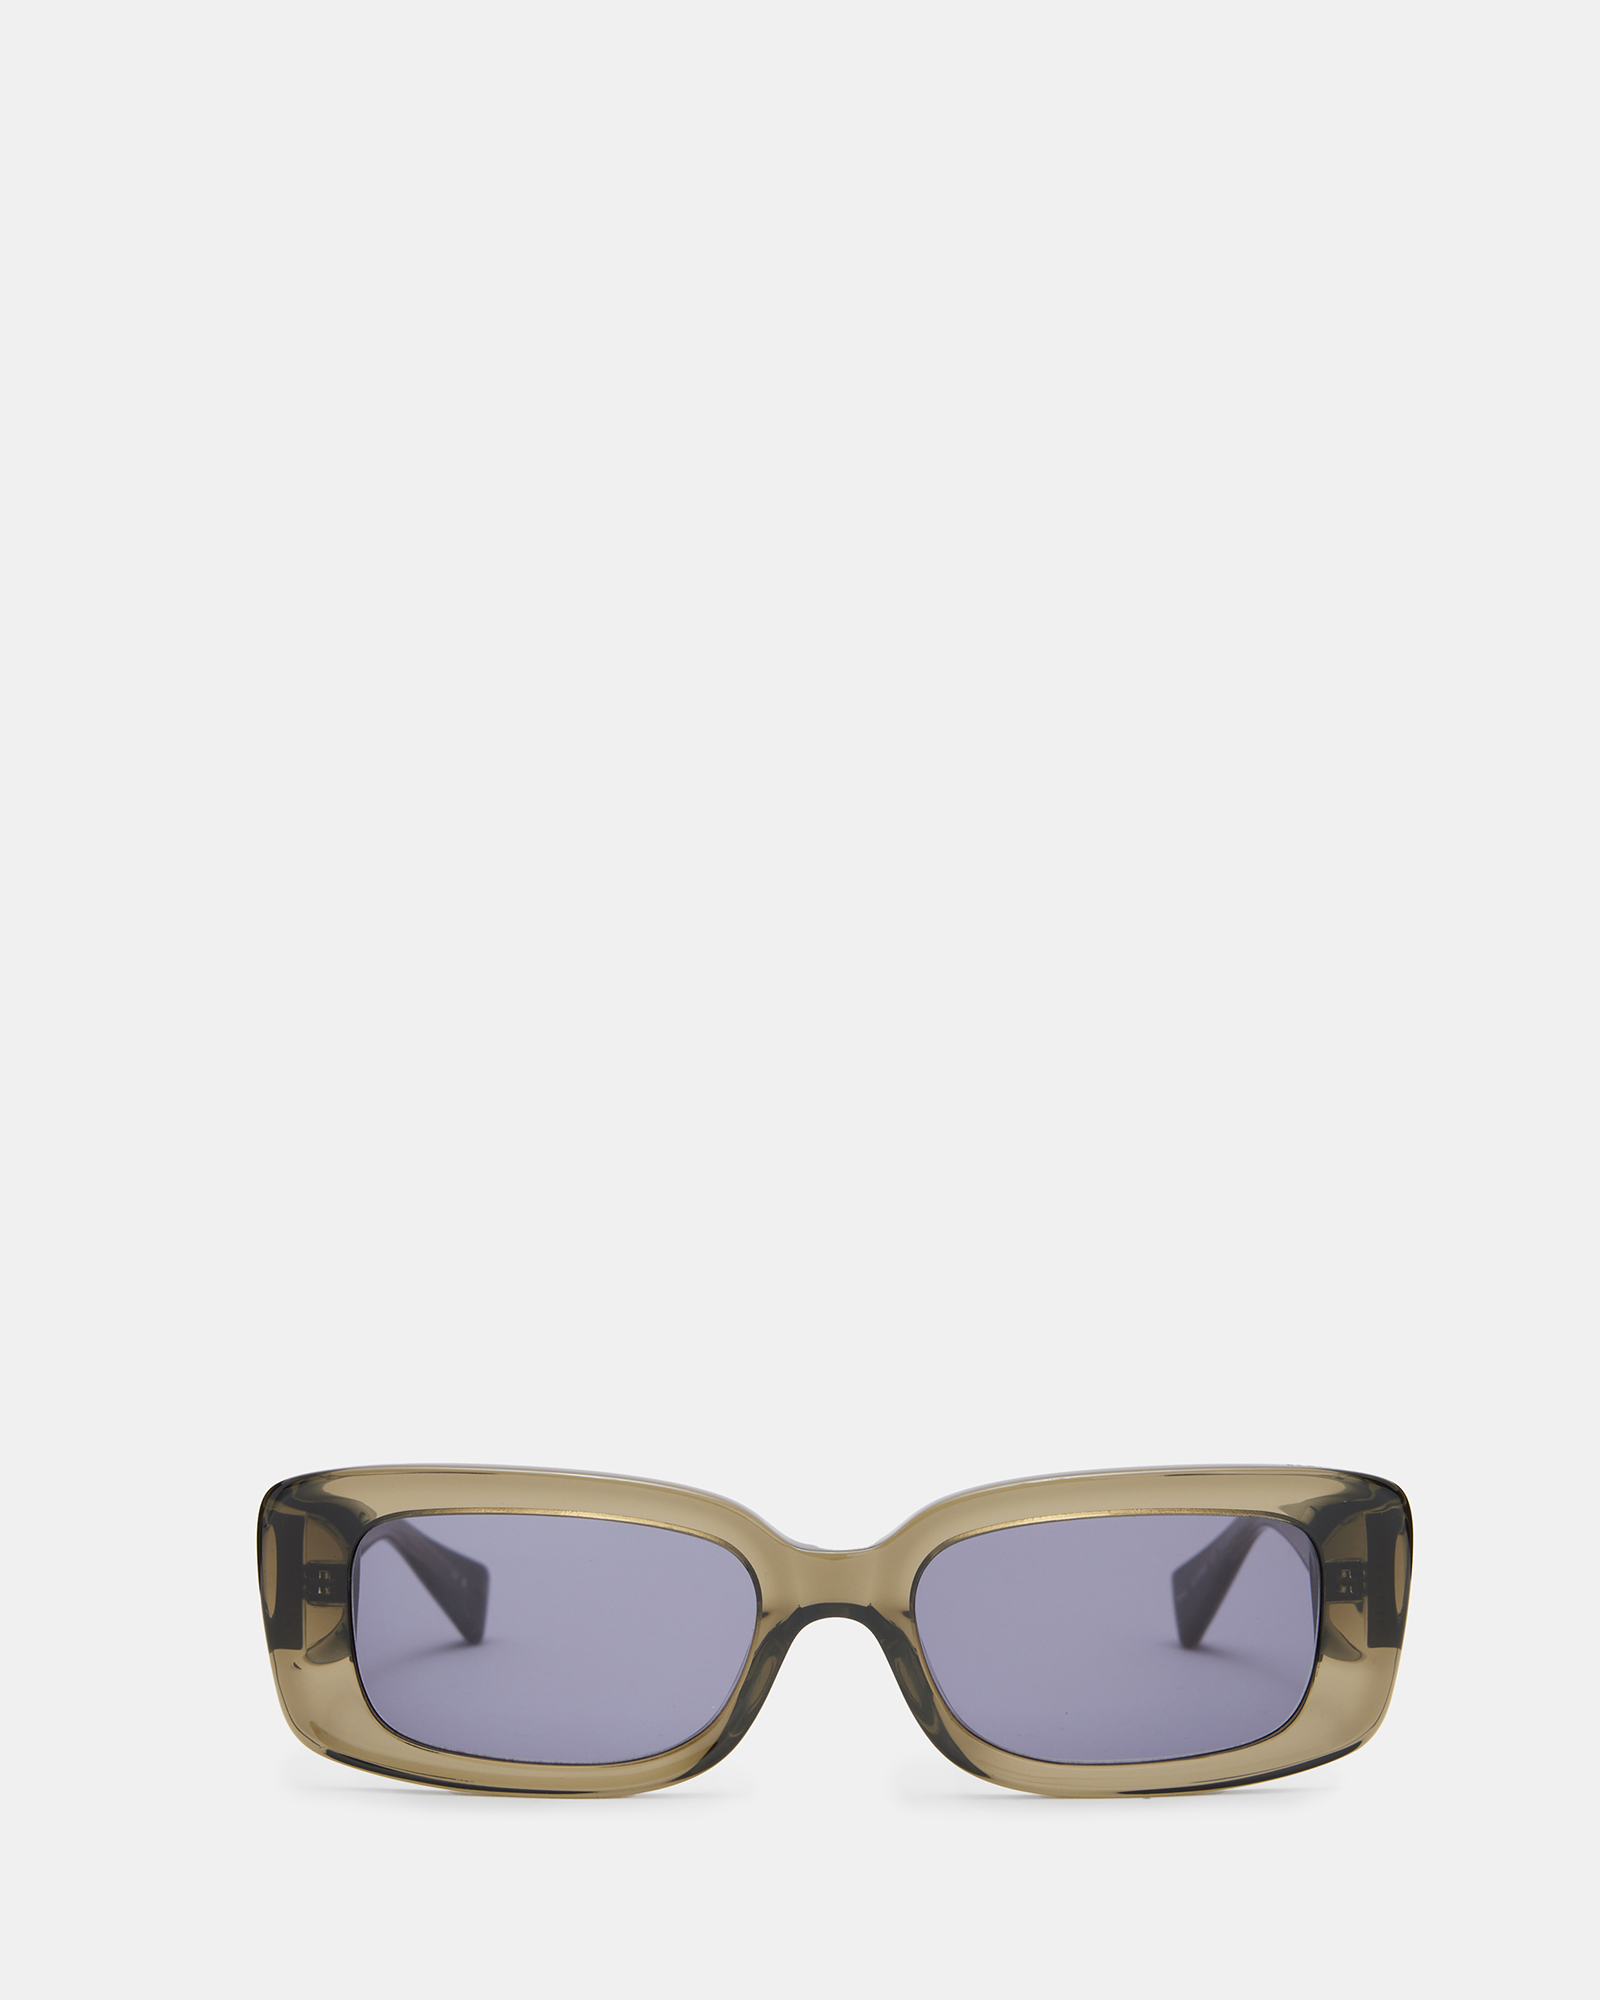 AllSaints Sonic Rectangular Sunglasses,, Khaki